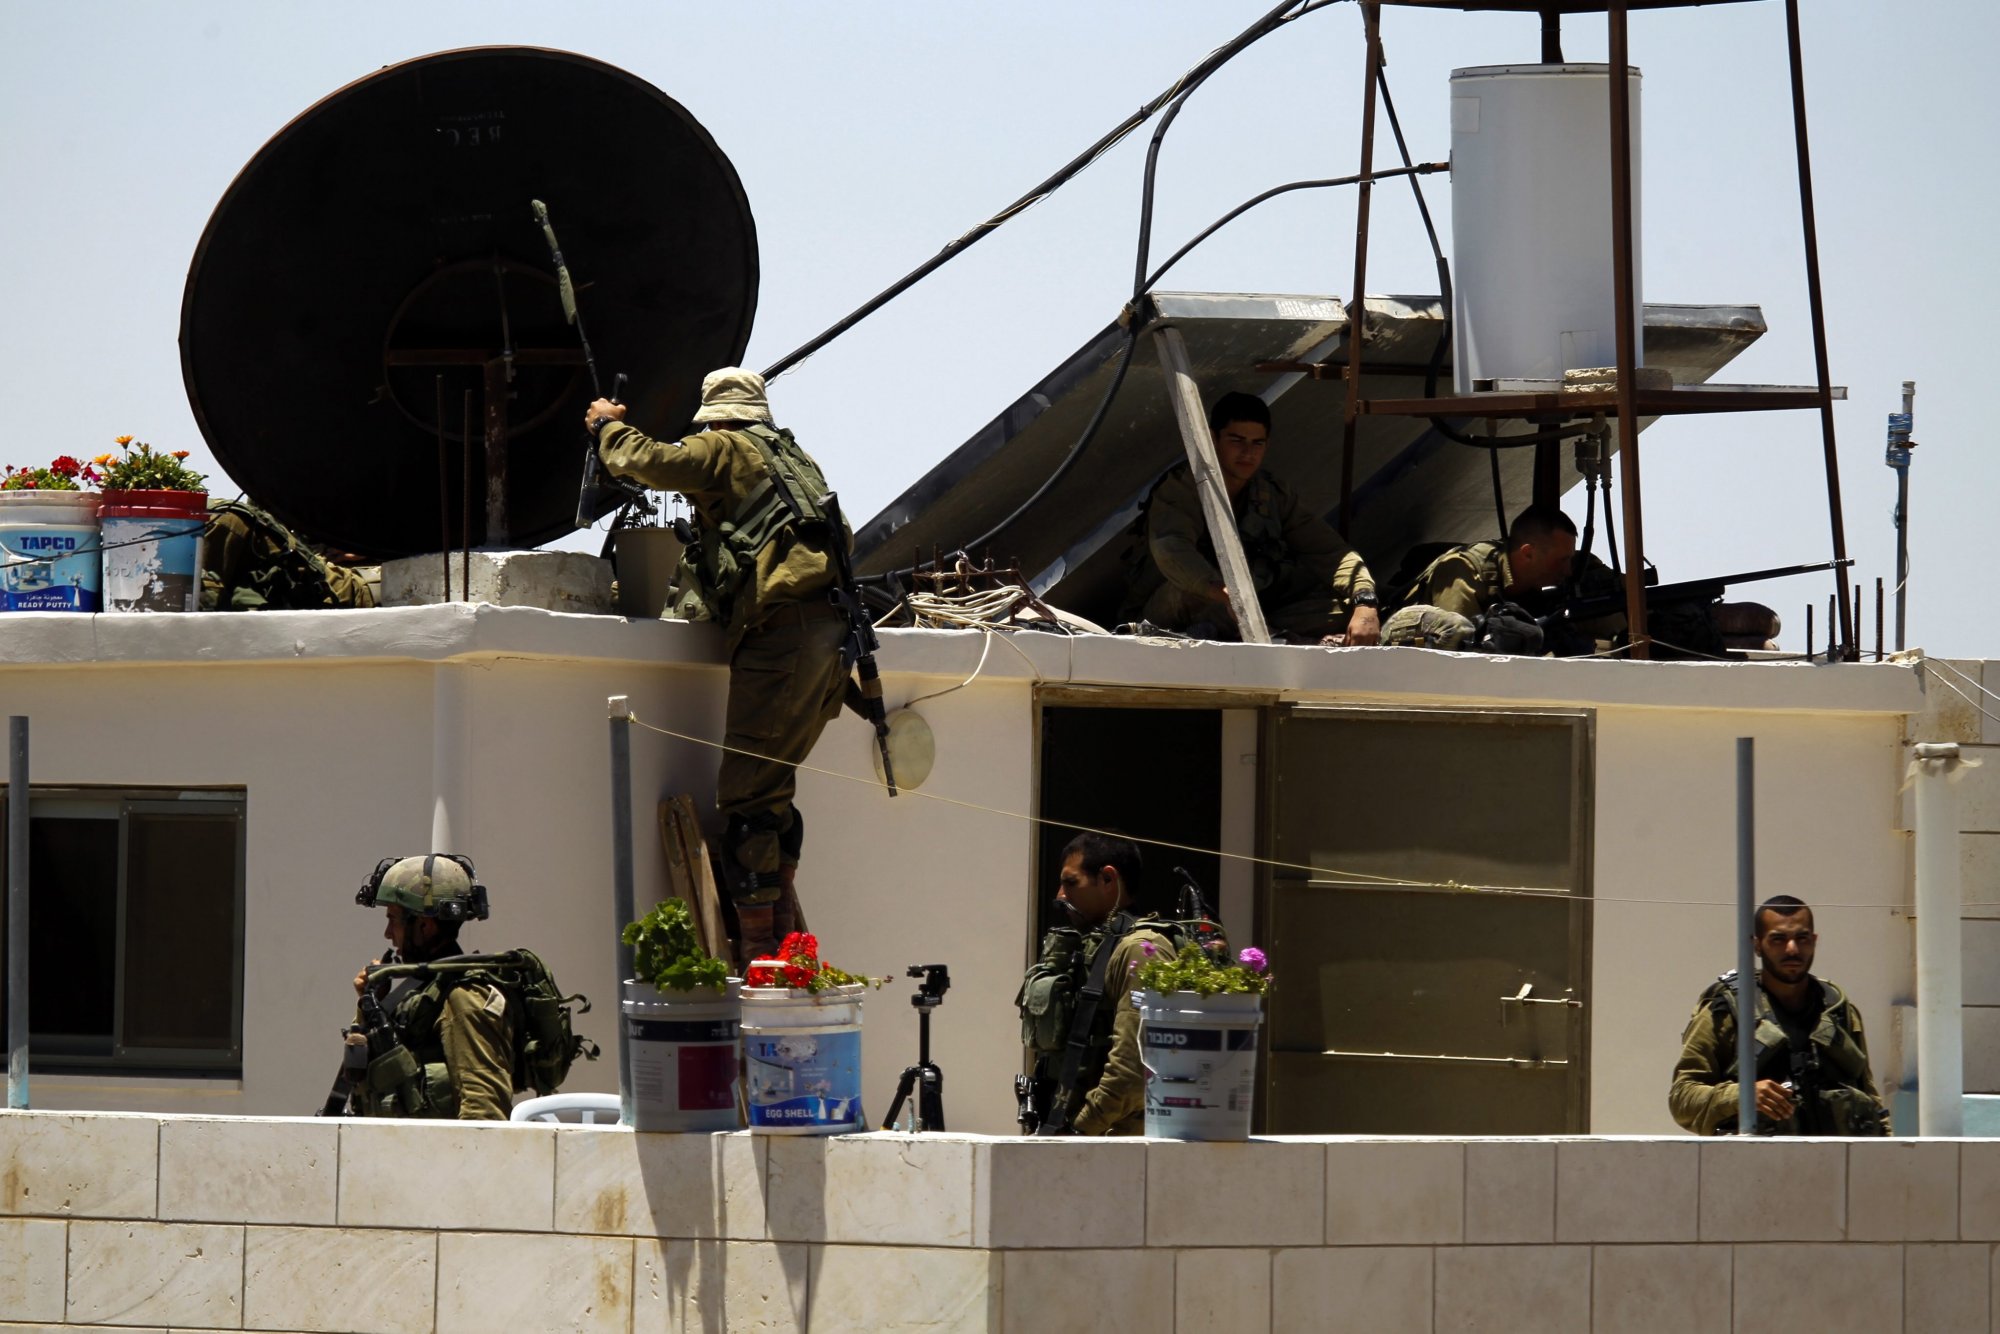 Δυτική Όχθη: Τραυματίες δύο πράκτορες της Σιν Μπετ σε επεισόδιο με πυροβολισμούς - Ο ένας σε σοβαρή κατάσταση